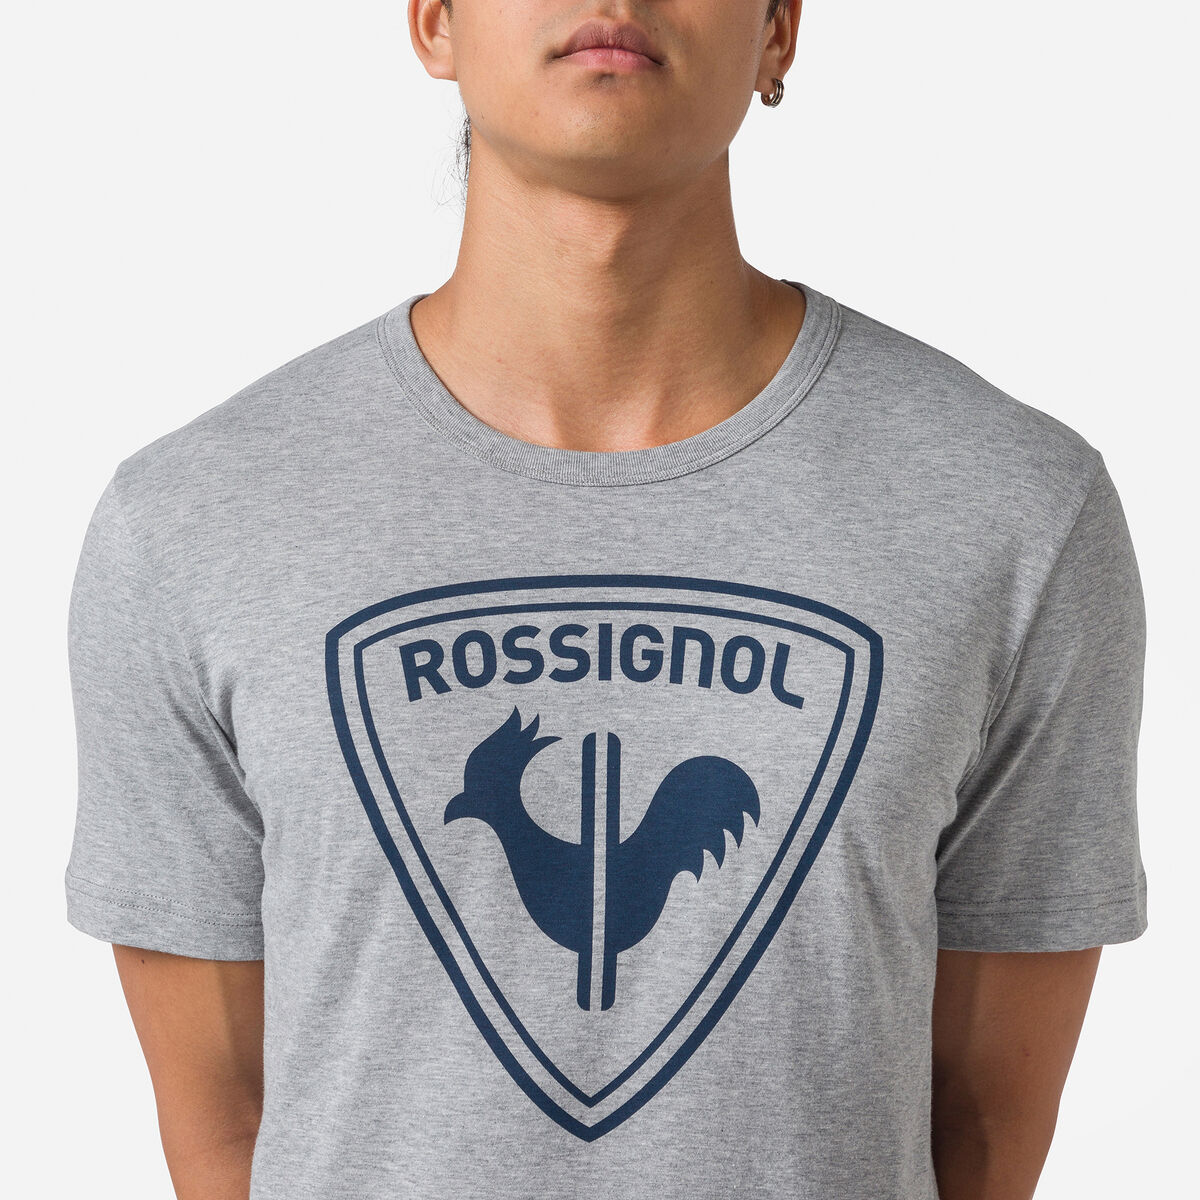 Rossignol Men's logo tee grey